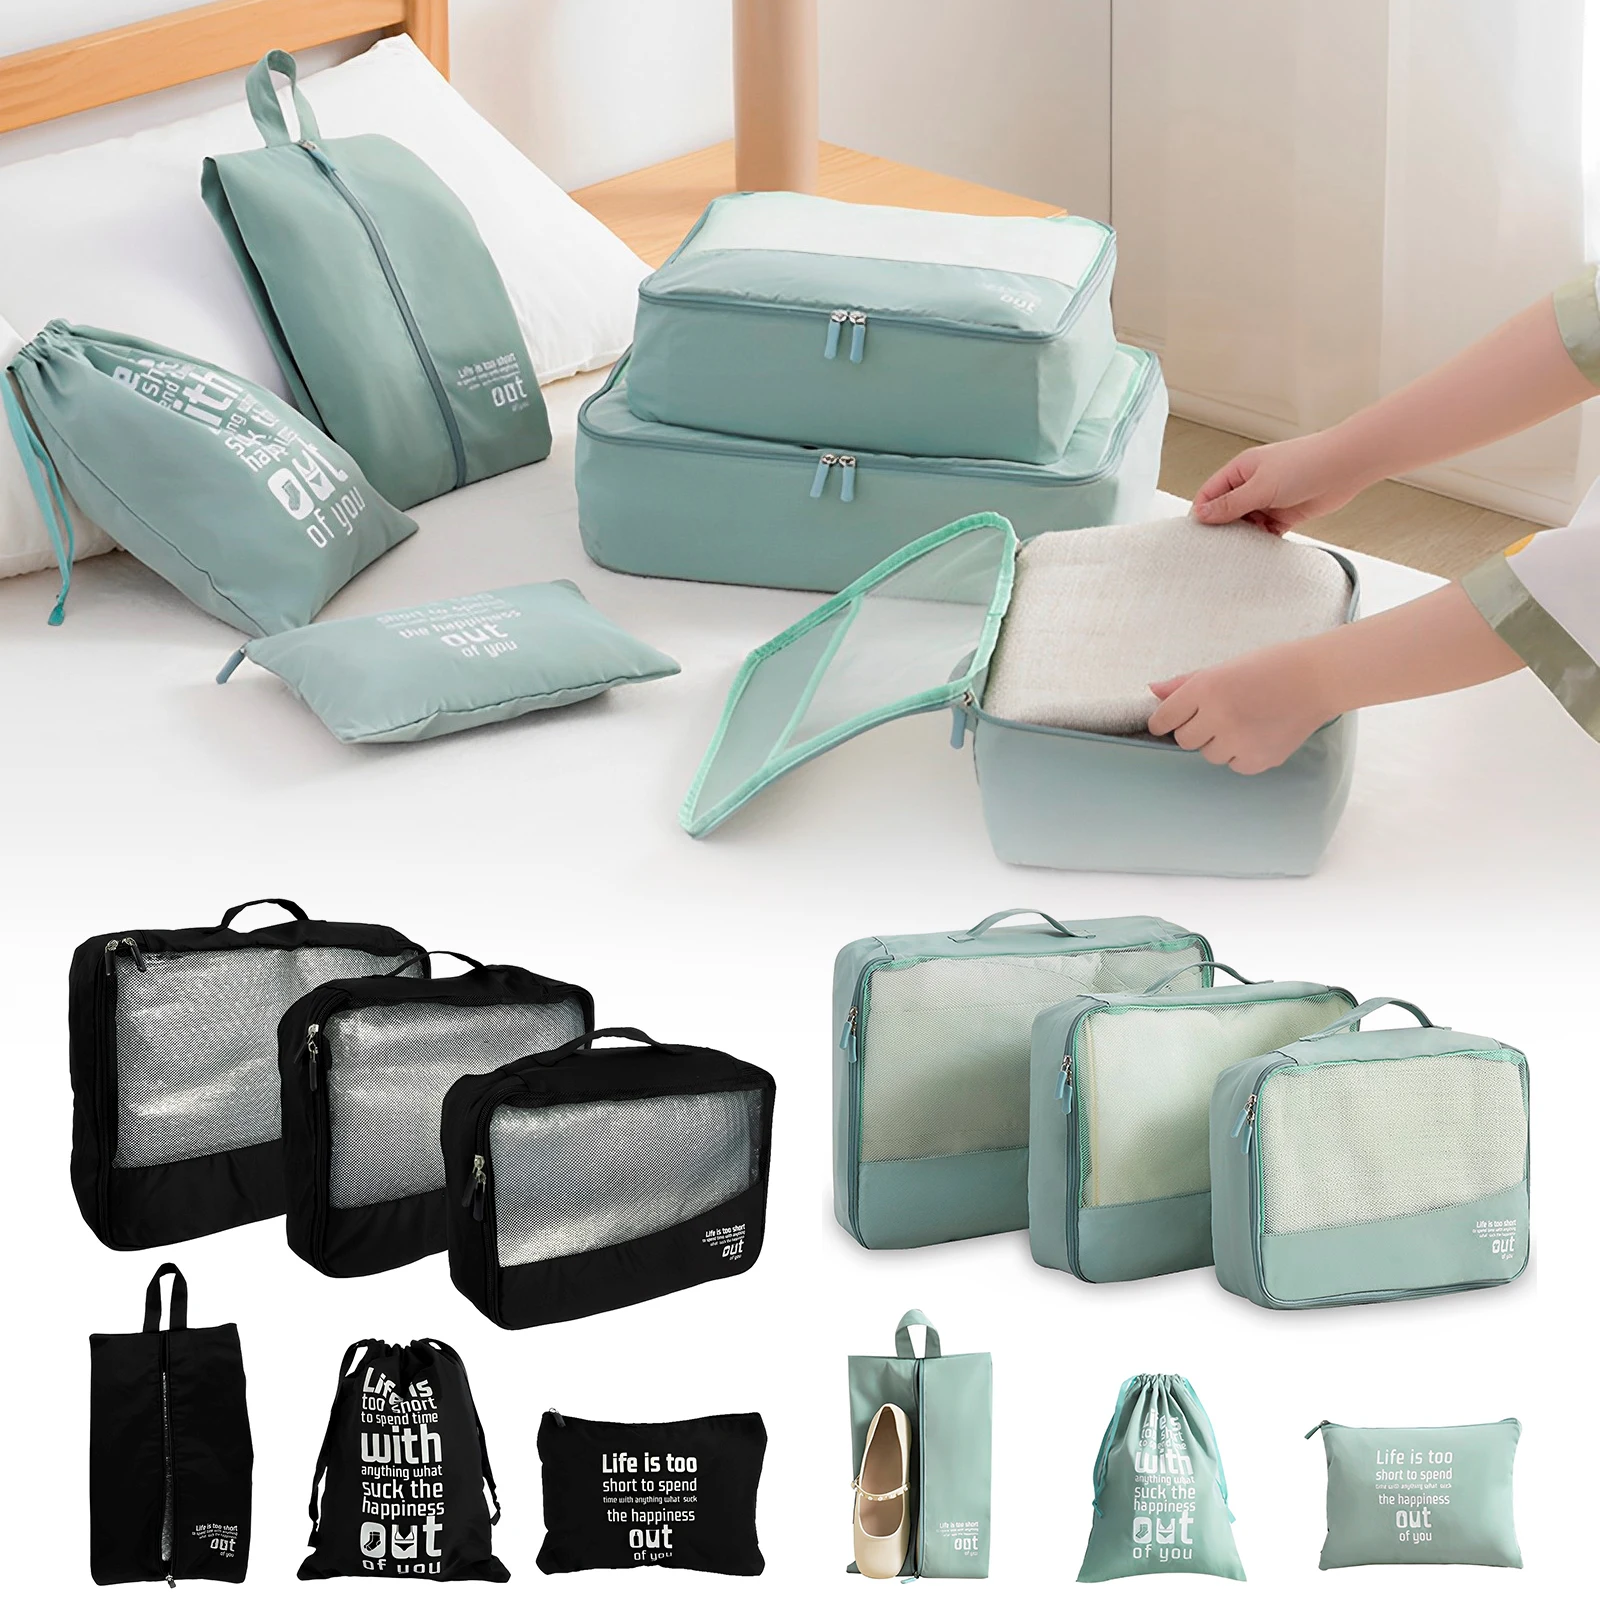 

6Pcs Travel Packing Cubes Portable Packing Luggage Organizer Space Saving Suitcase Organizer Cube Splashproof Travel Storage Bag